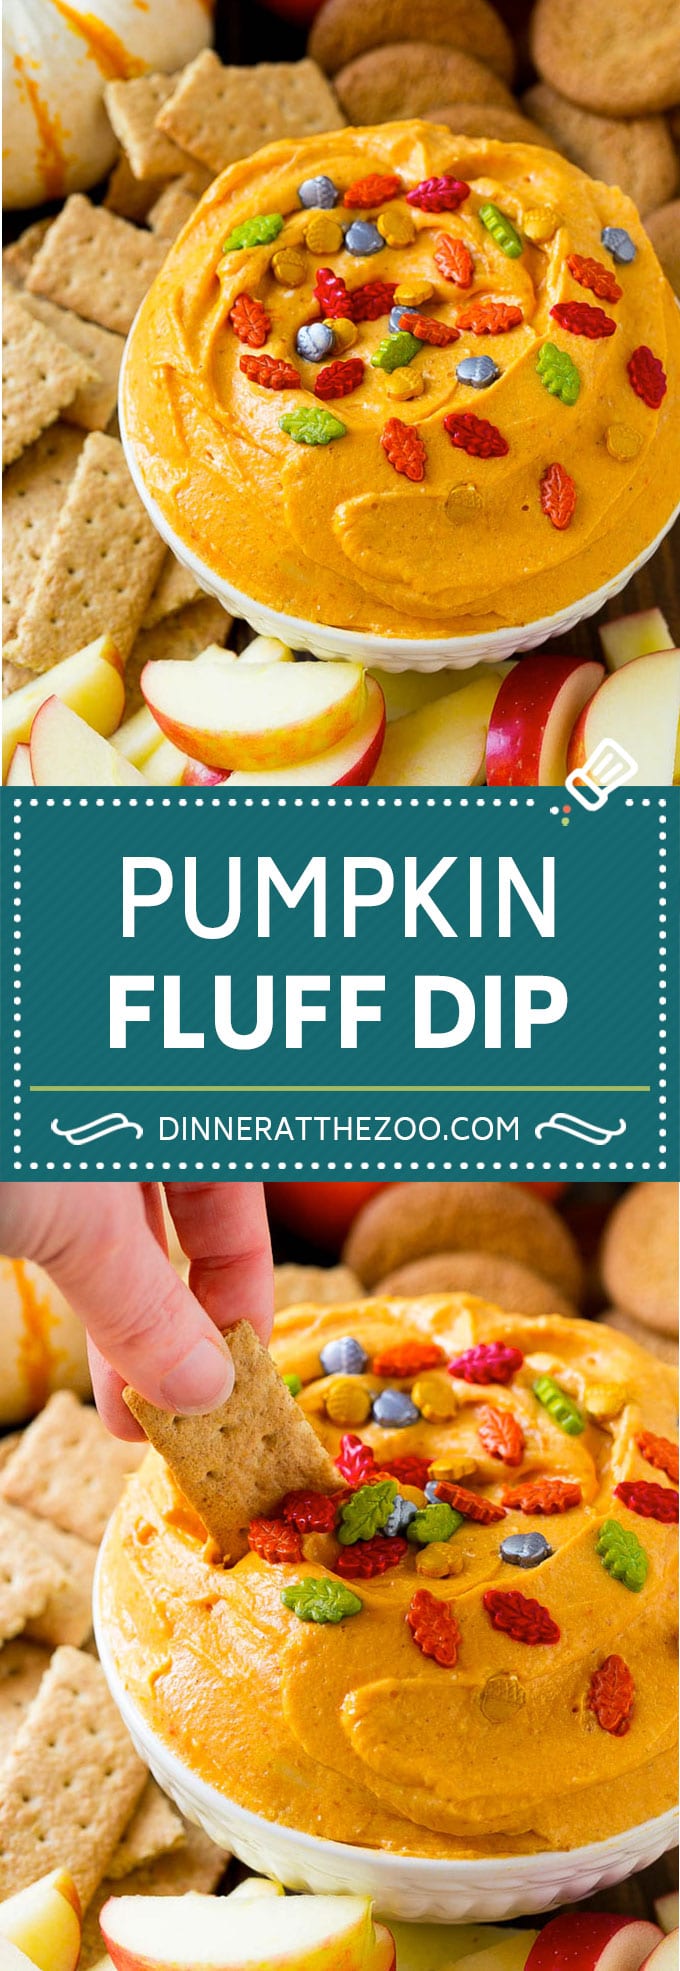 Pumpkin Dip Recipe | Dessert Dip | Pumpkin Pie Dip #pumpkin #dessert #dip #fall #thanksgiving #dinneratthezoo